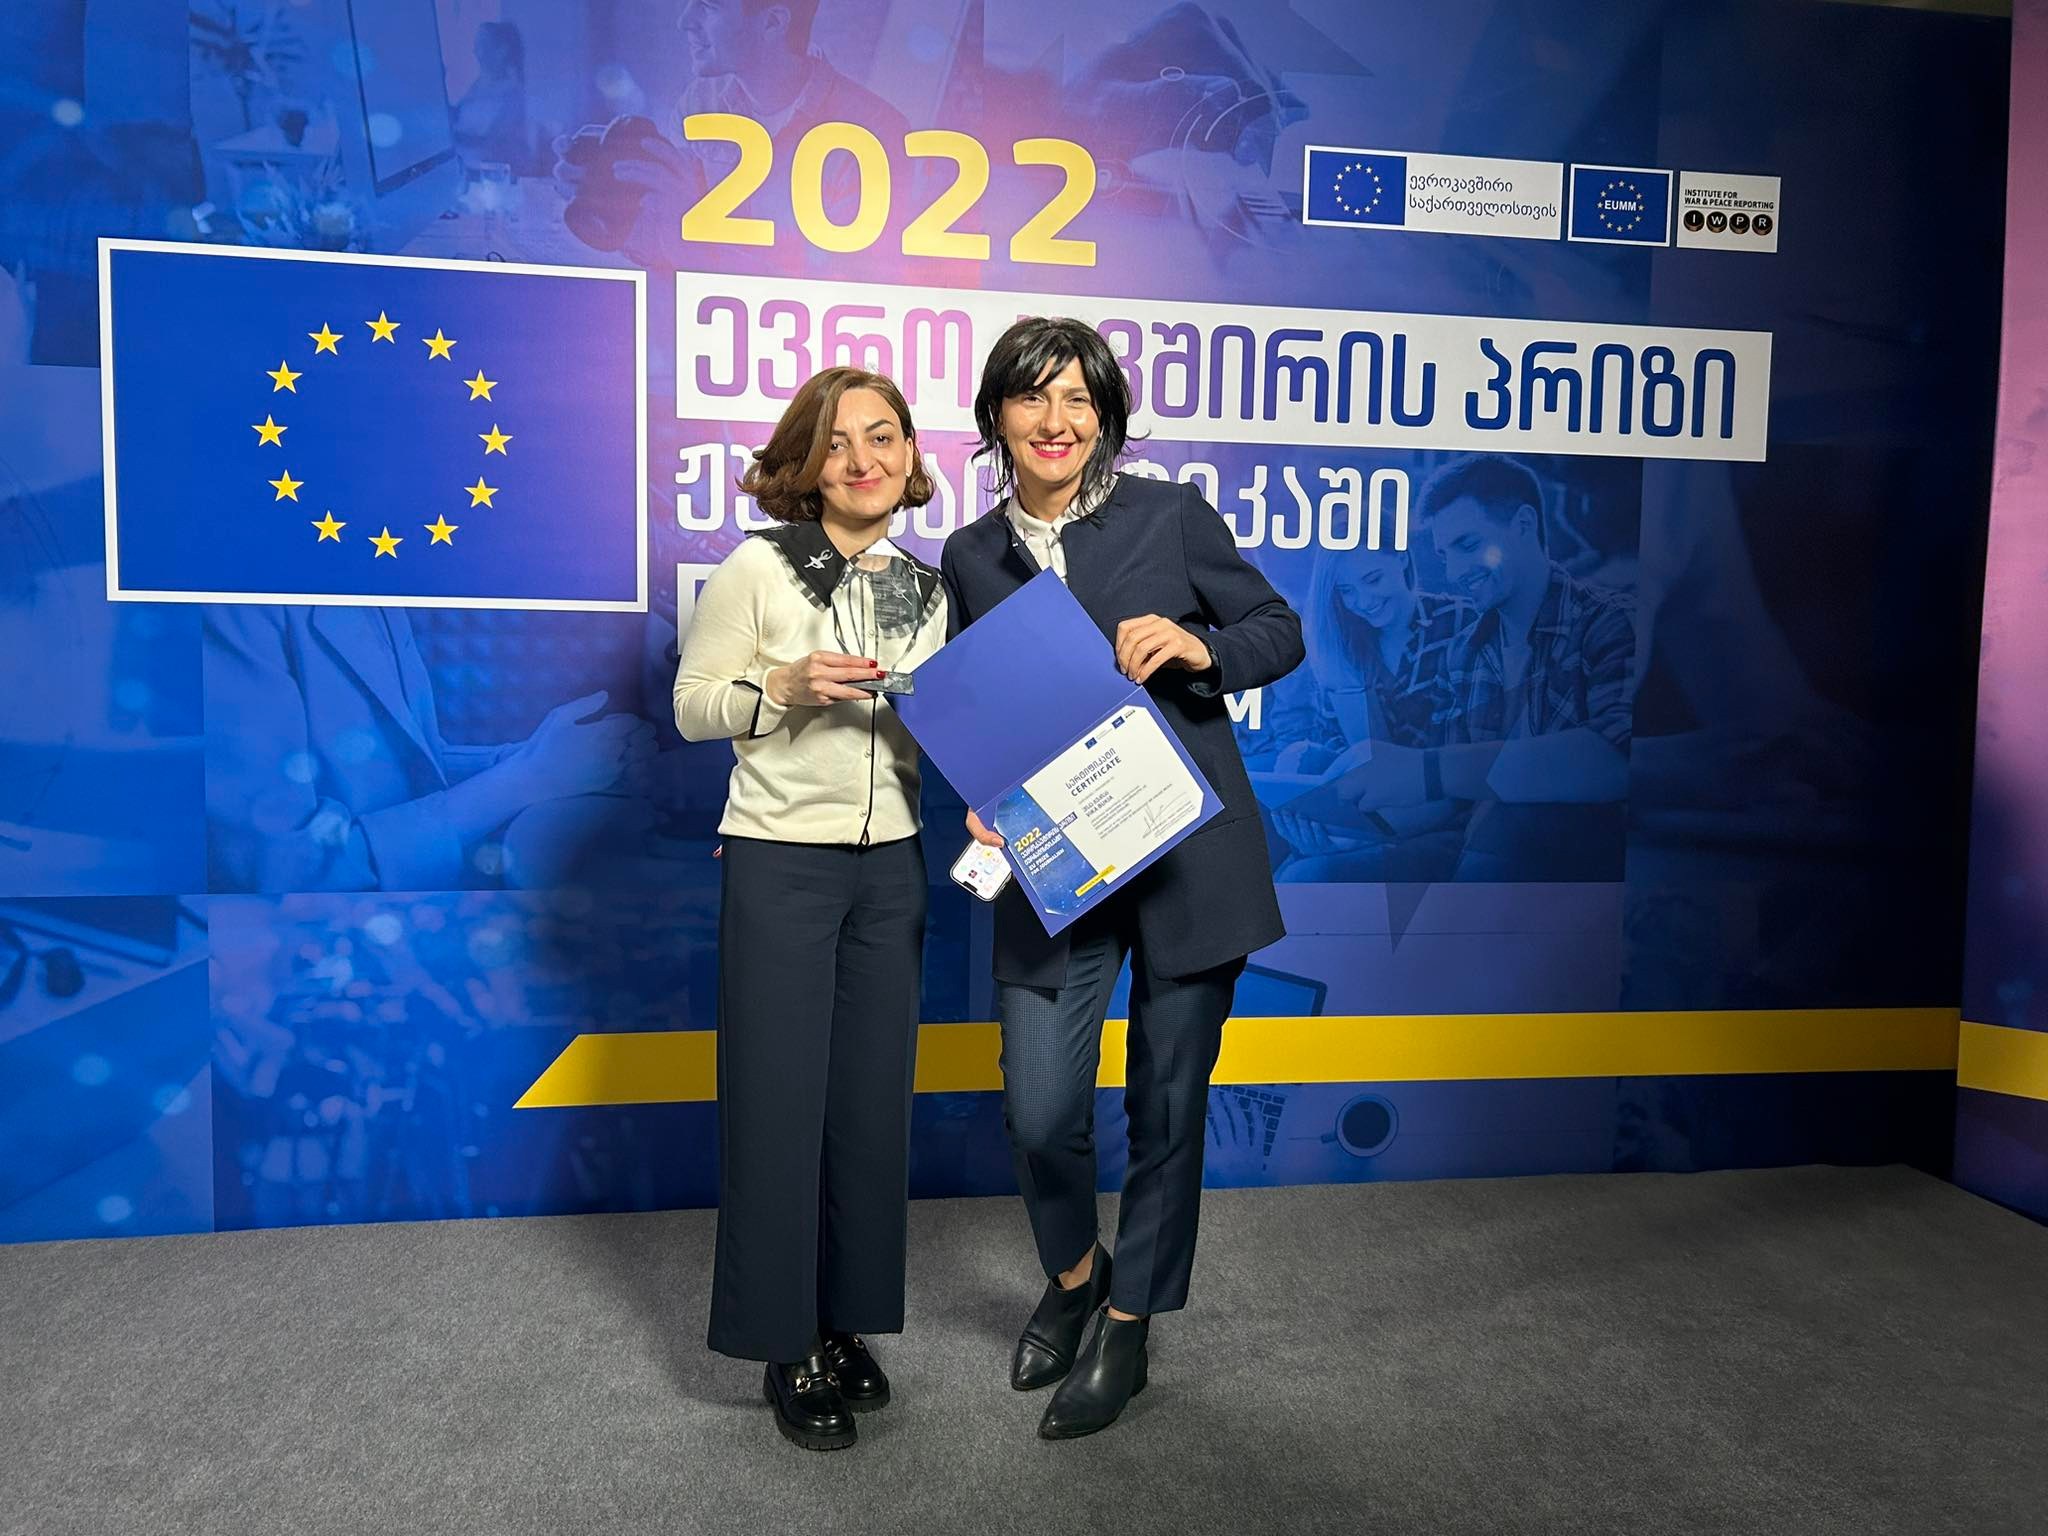 Եվրամիության լրագրողական մրցանակ 2022 թ